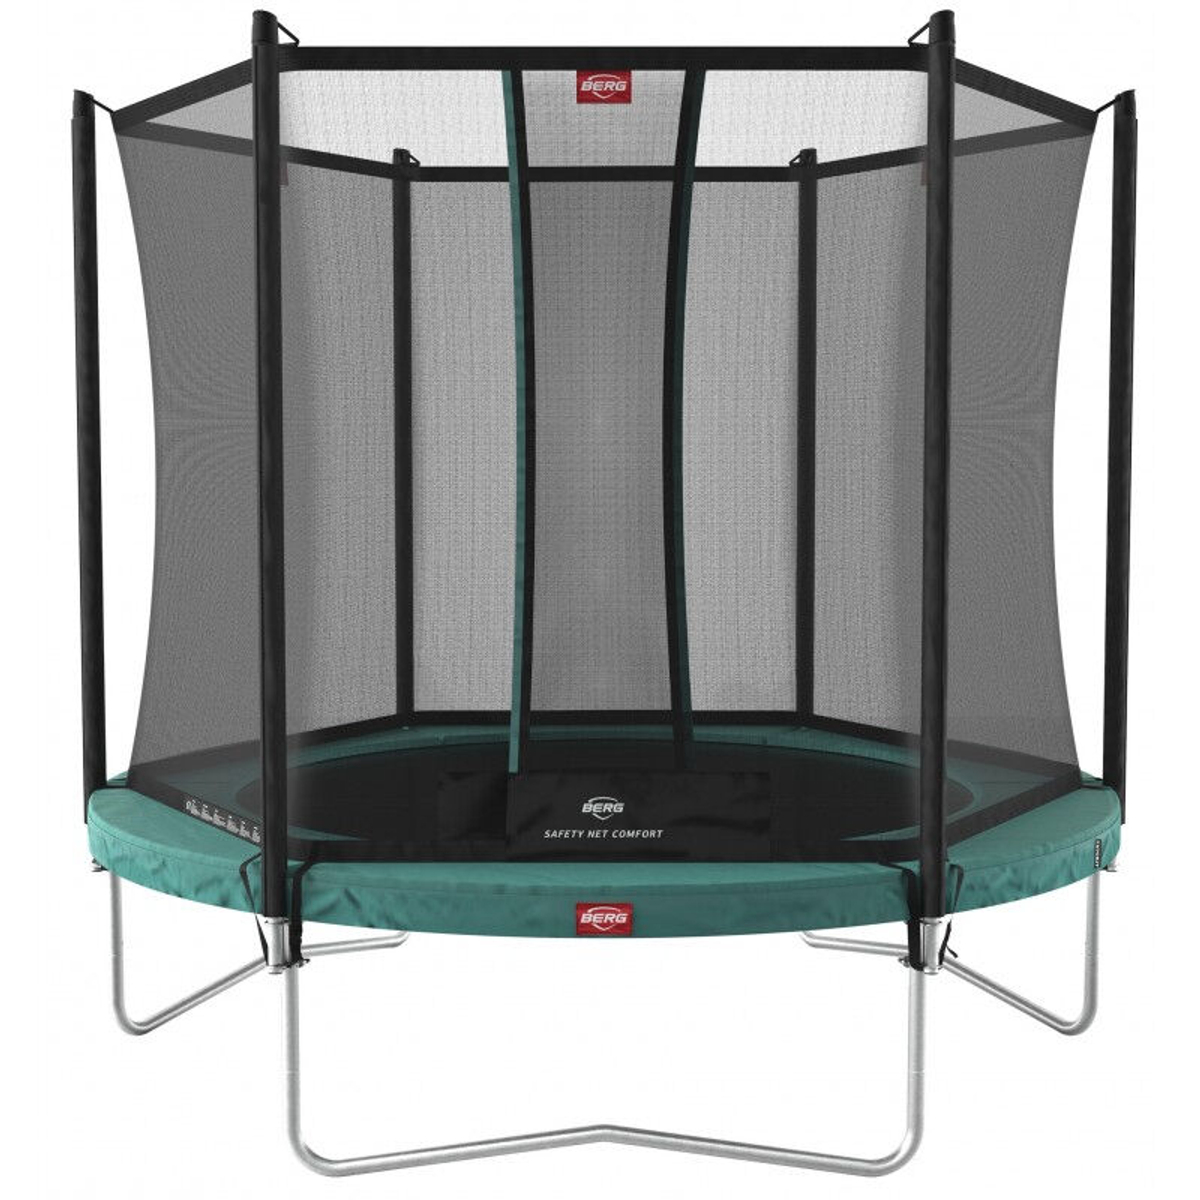 Berg Favorit Trampoline 330 + Safety Net Comfort